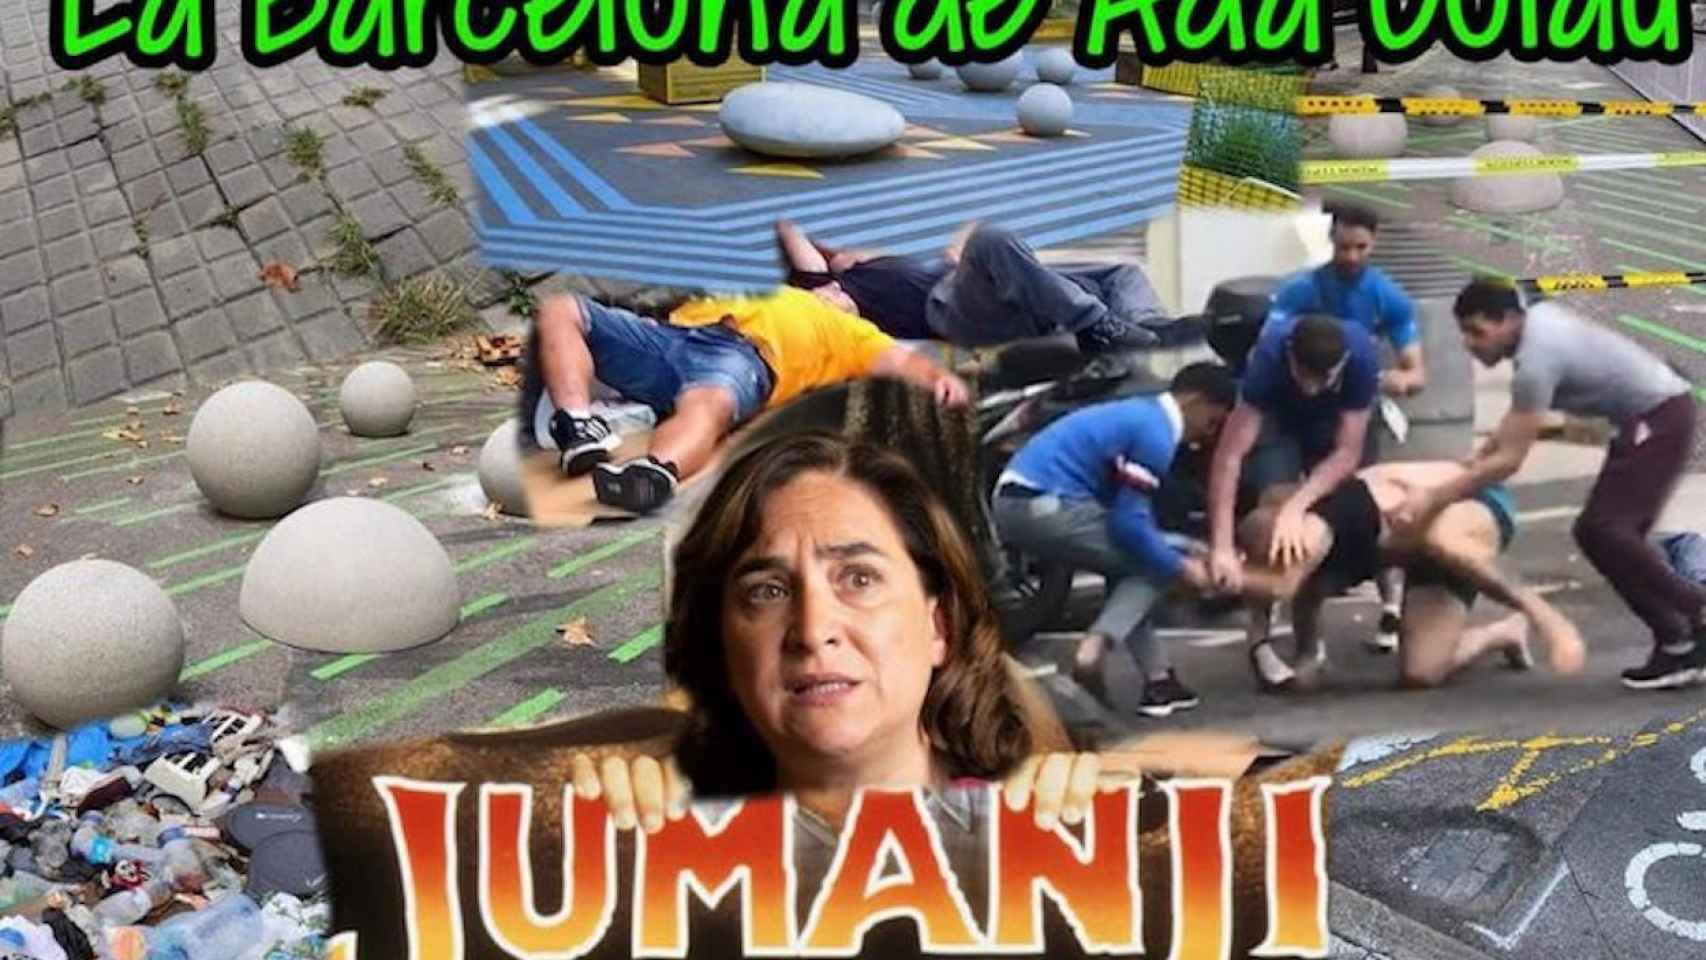 Algunos 'memes' en las redes sociales comparan la Barcelona de Colau con la película 'Jumanji' / TWITTER